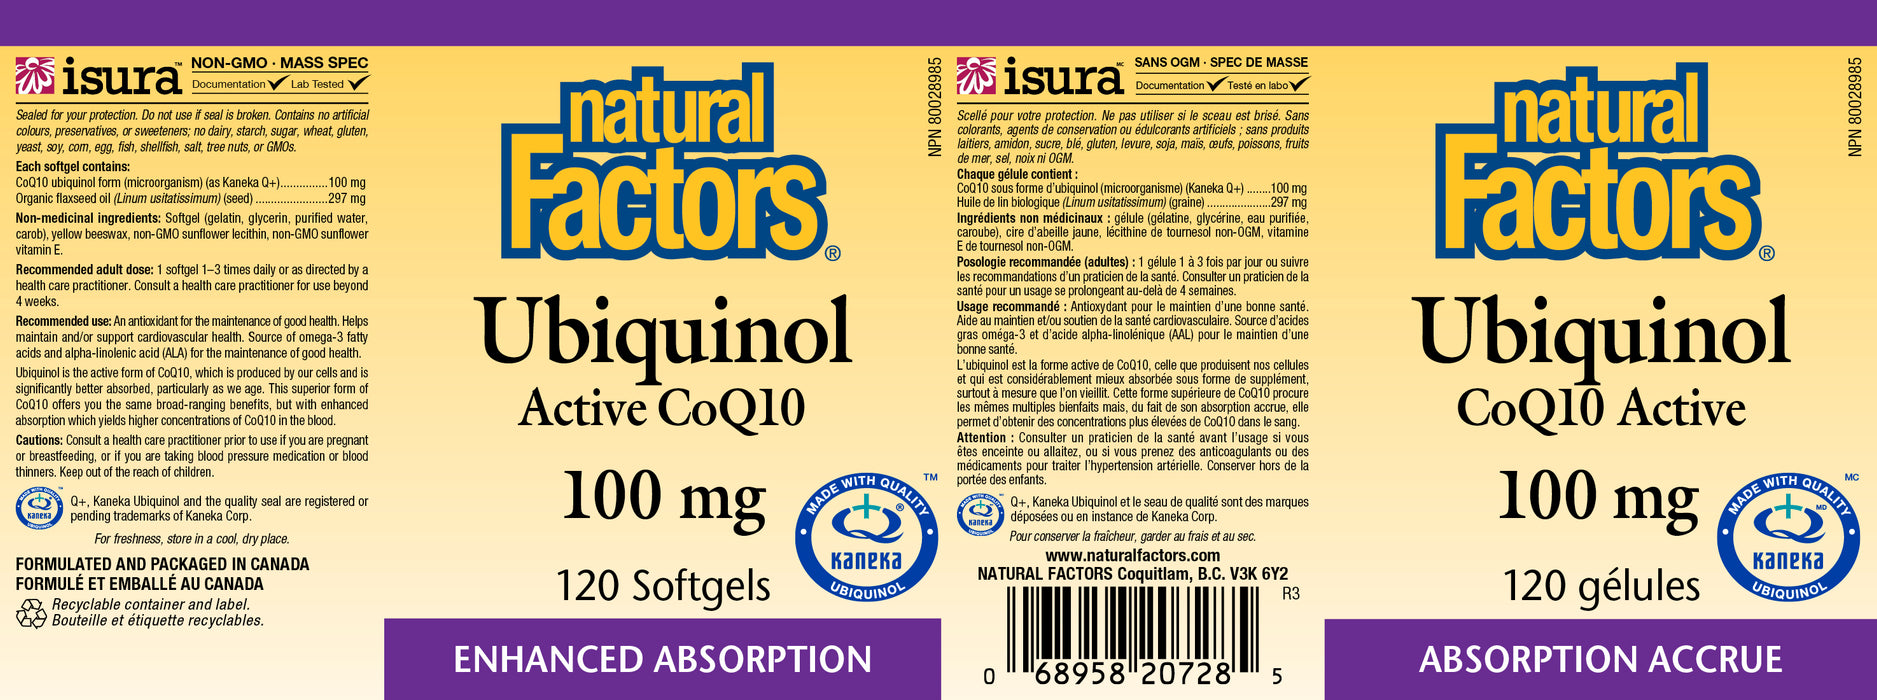 Natural Factors Ubiquinol Active CoQ10 100mg 120 Softgels